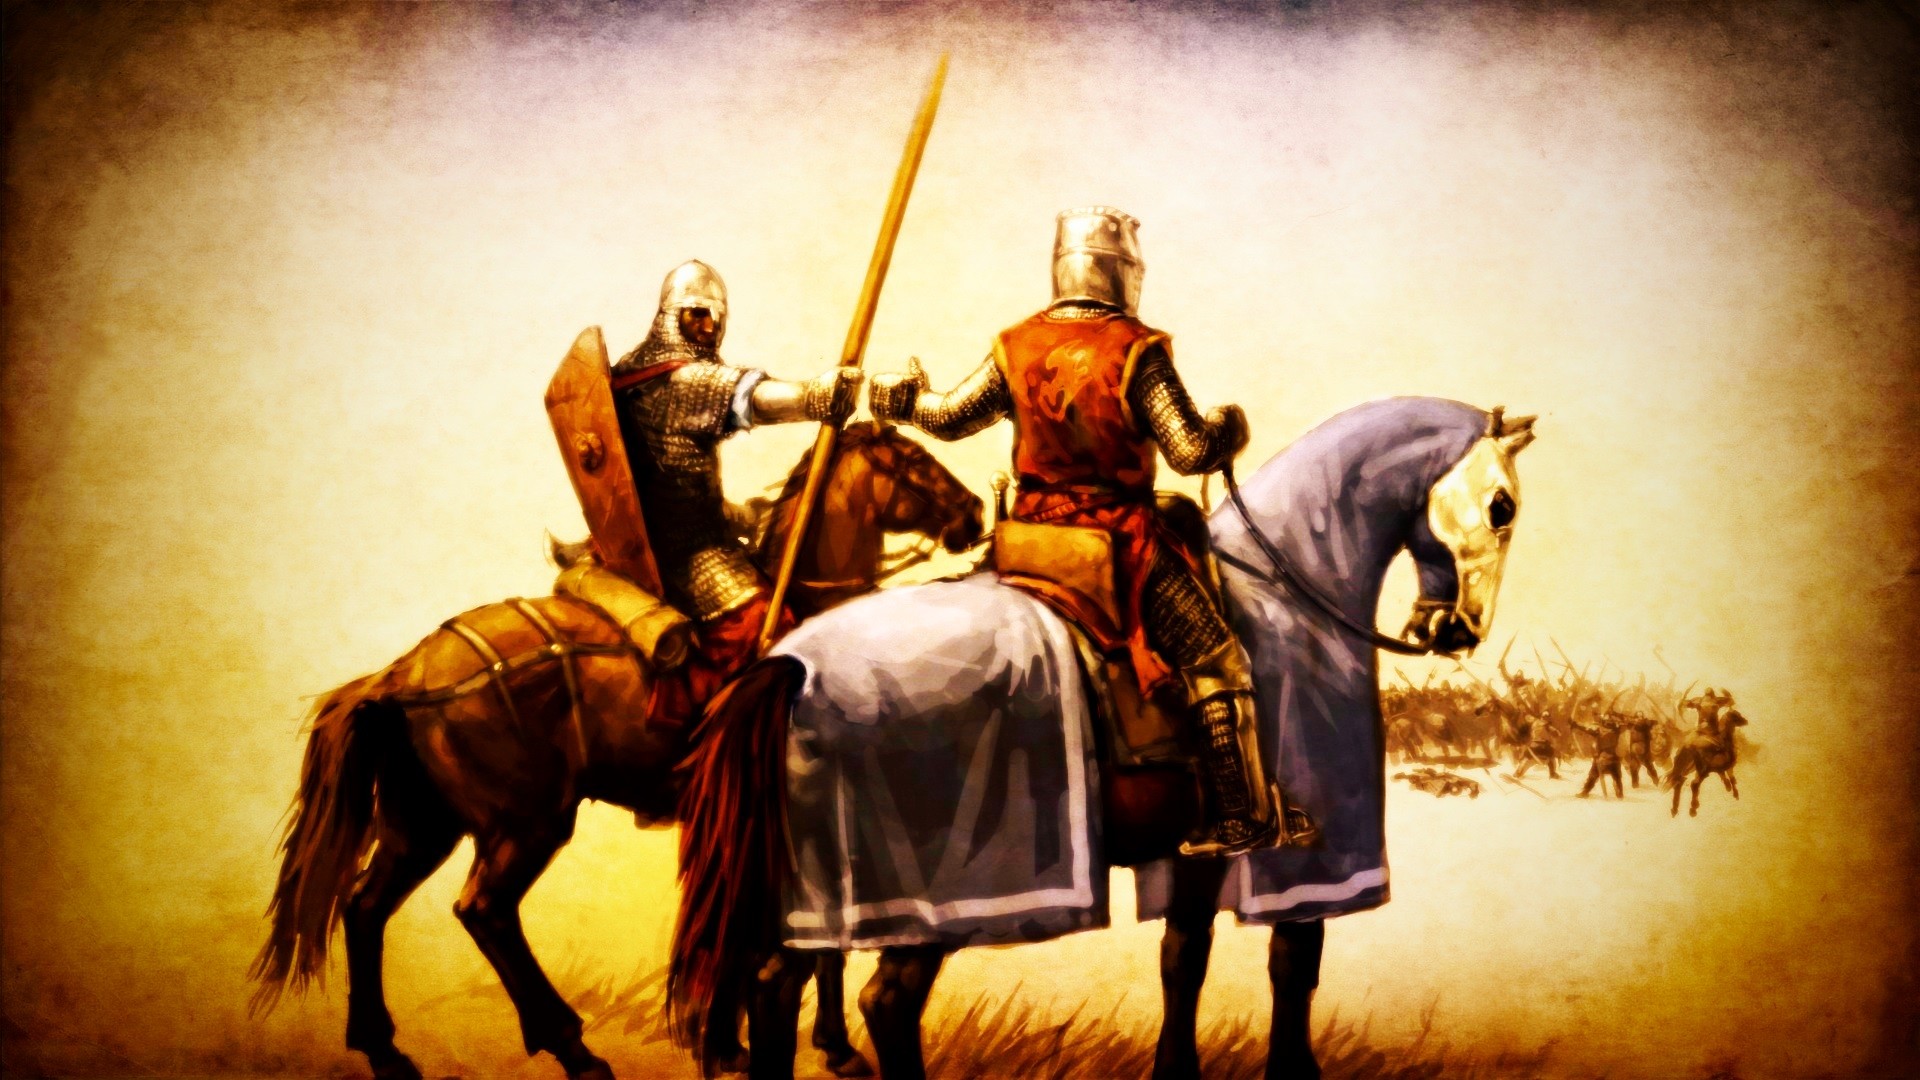 #battle, #medieval, #fantasy art, #knight, #horse, #spear, #artwork, #warrior, wallpaper. Mocah HD Wallpaper